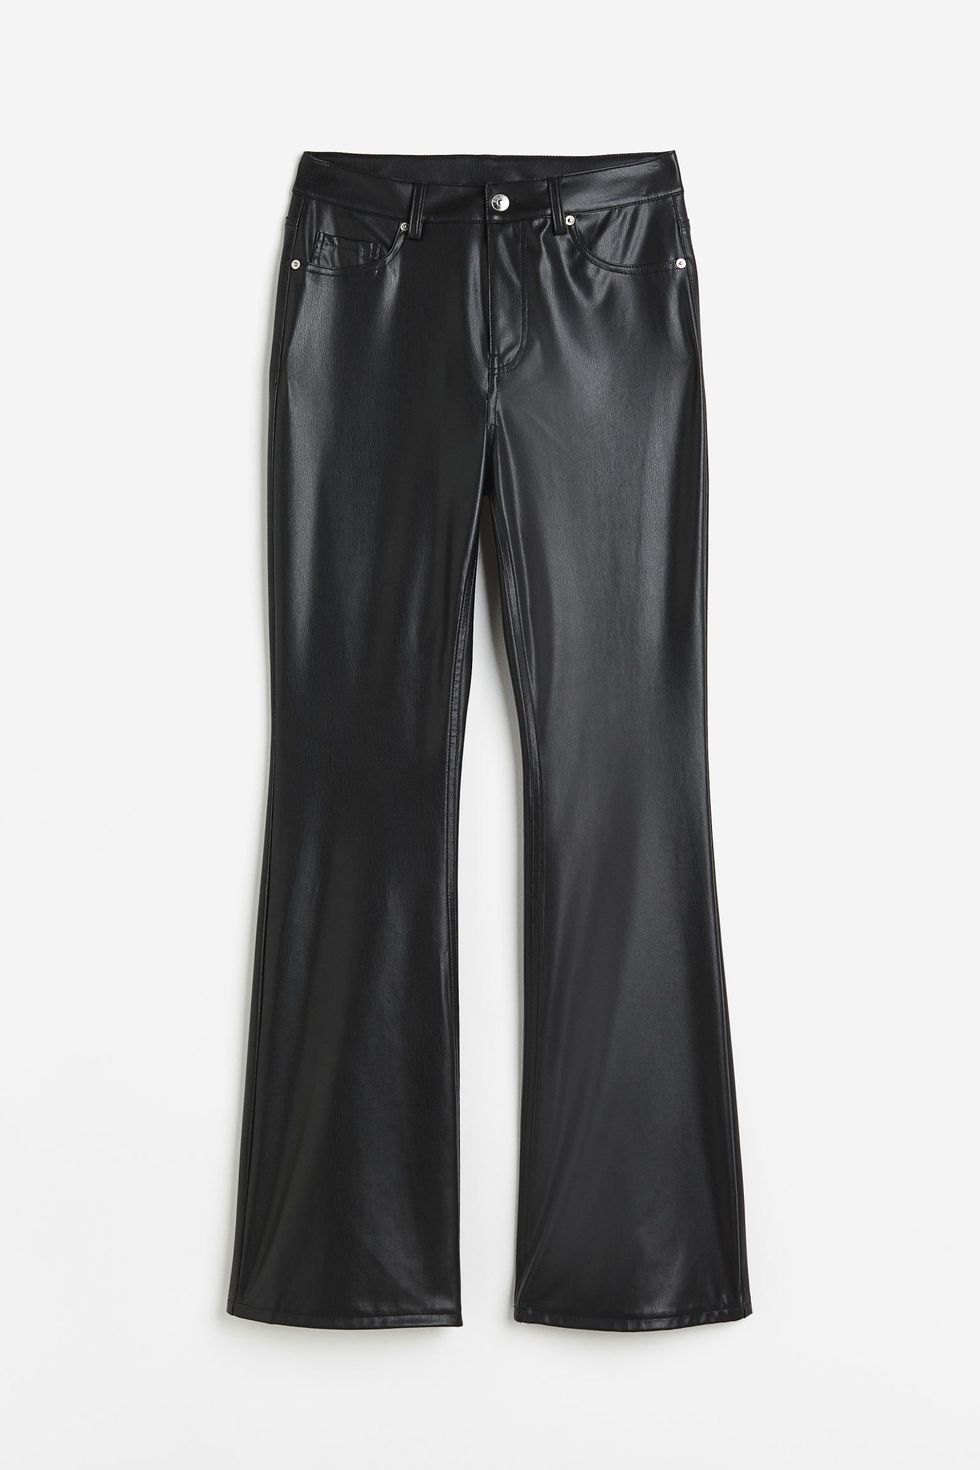 Pantaloni a zampa effetto pelle, H&M